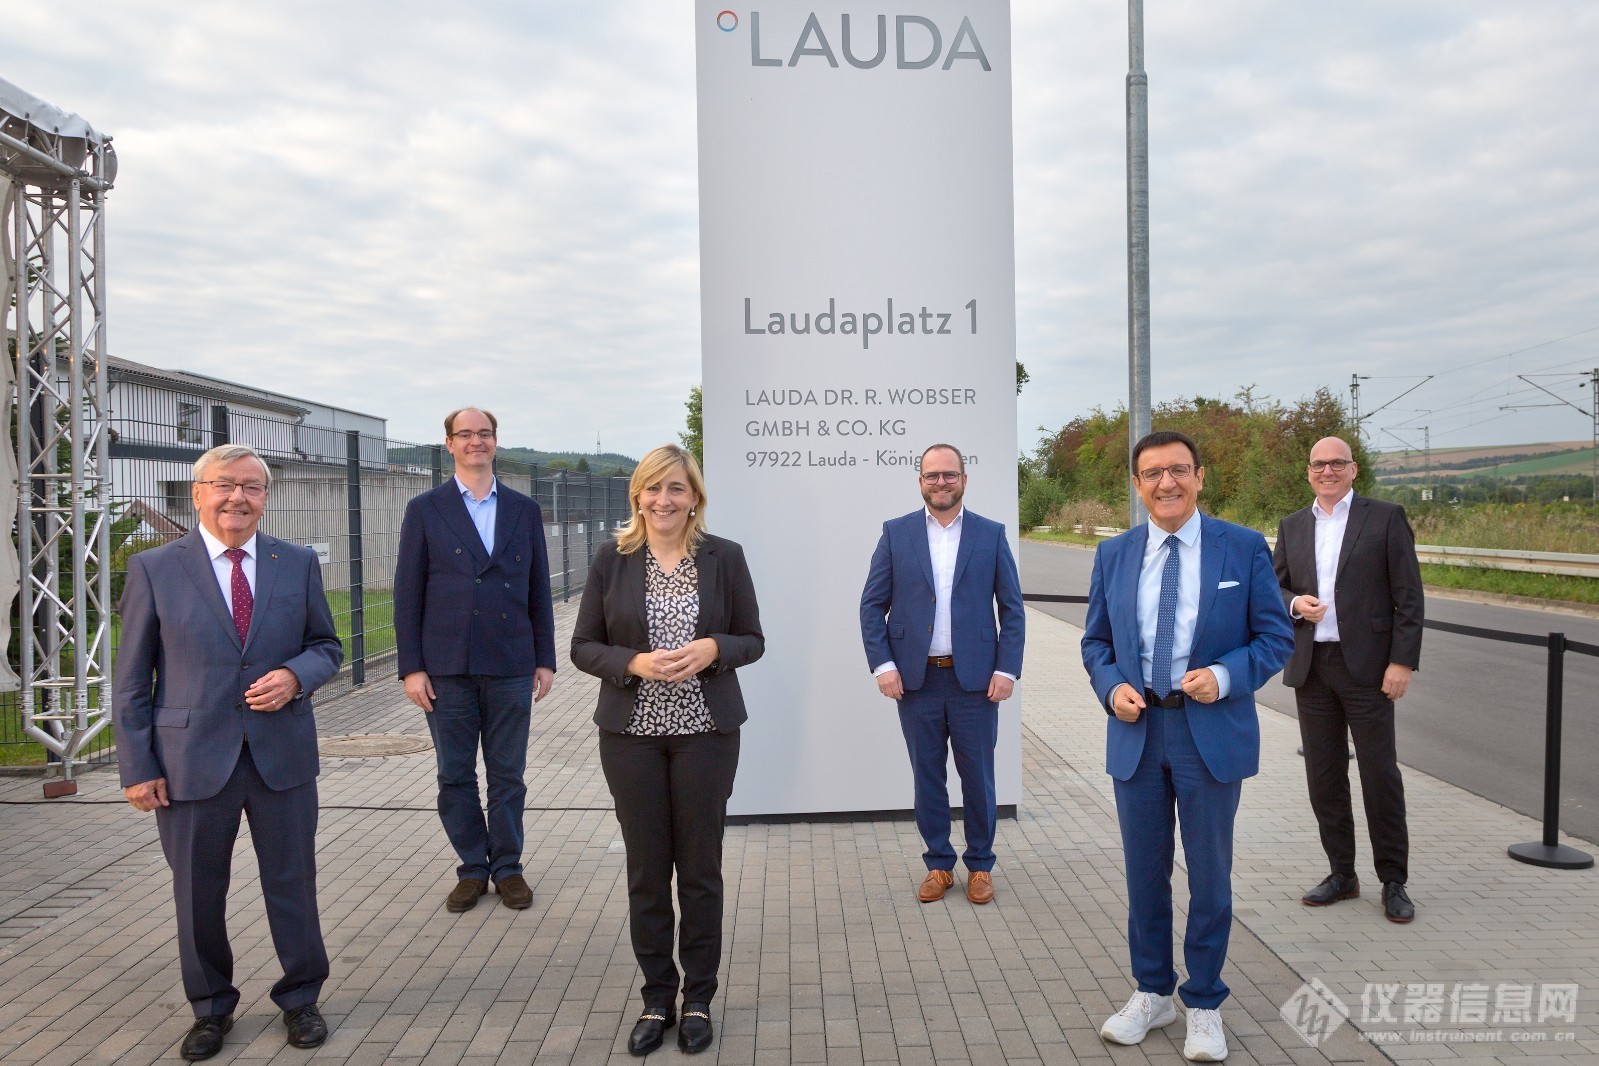 LAUDA 总部启用新地址 Laudaplatz 1